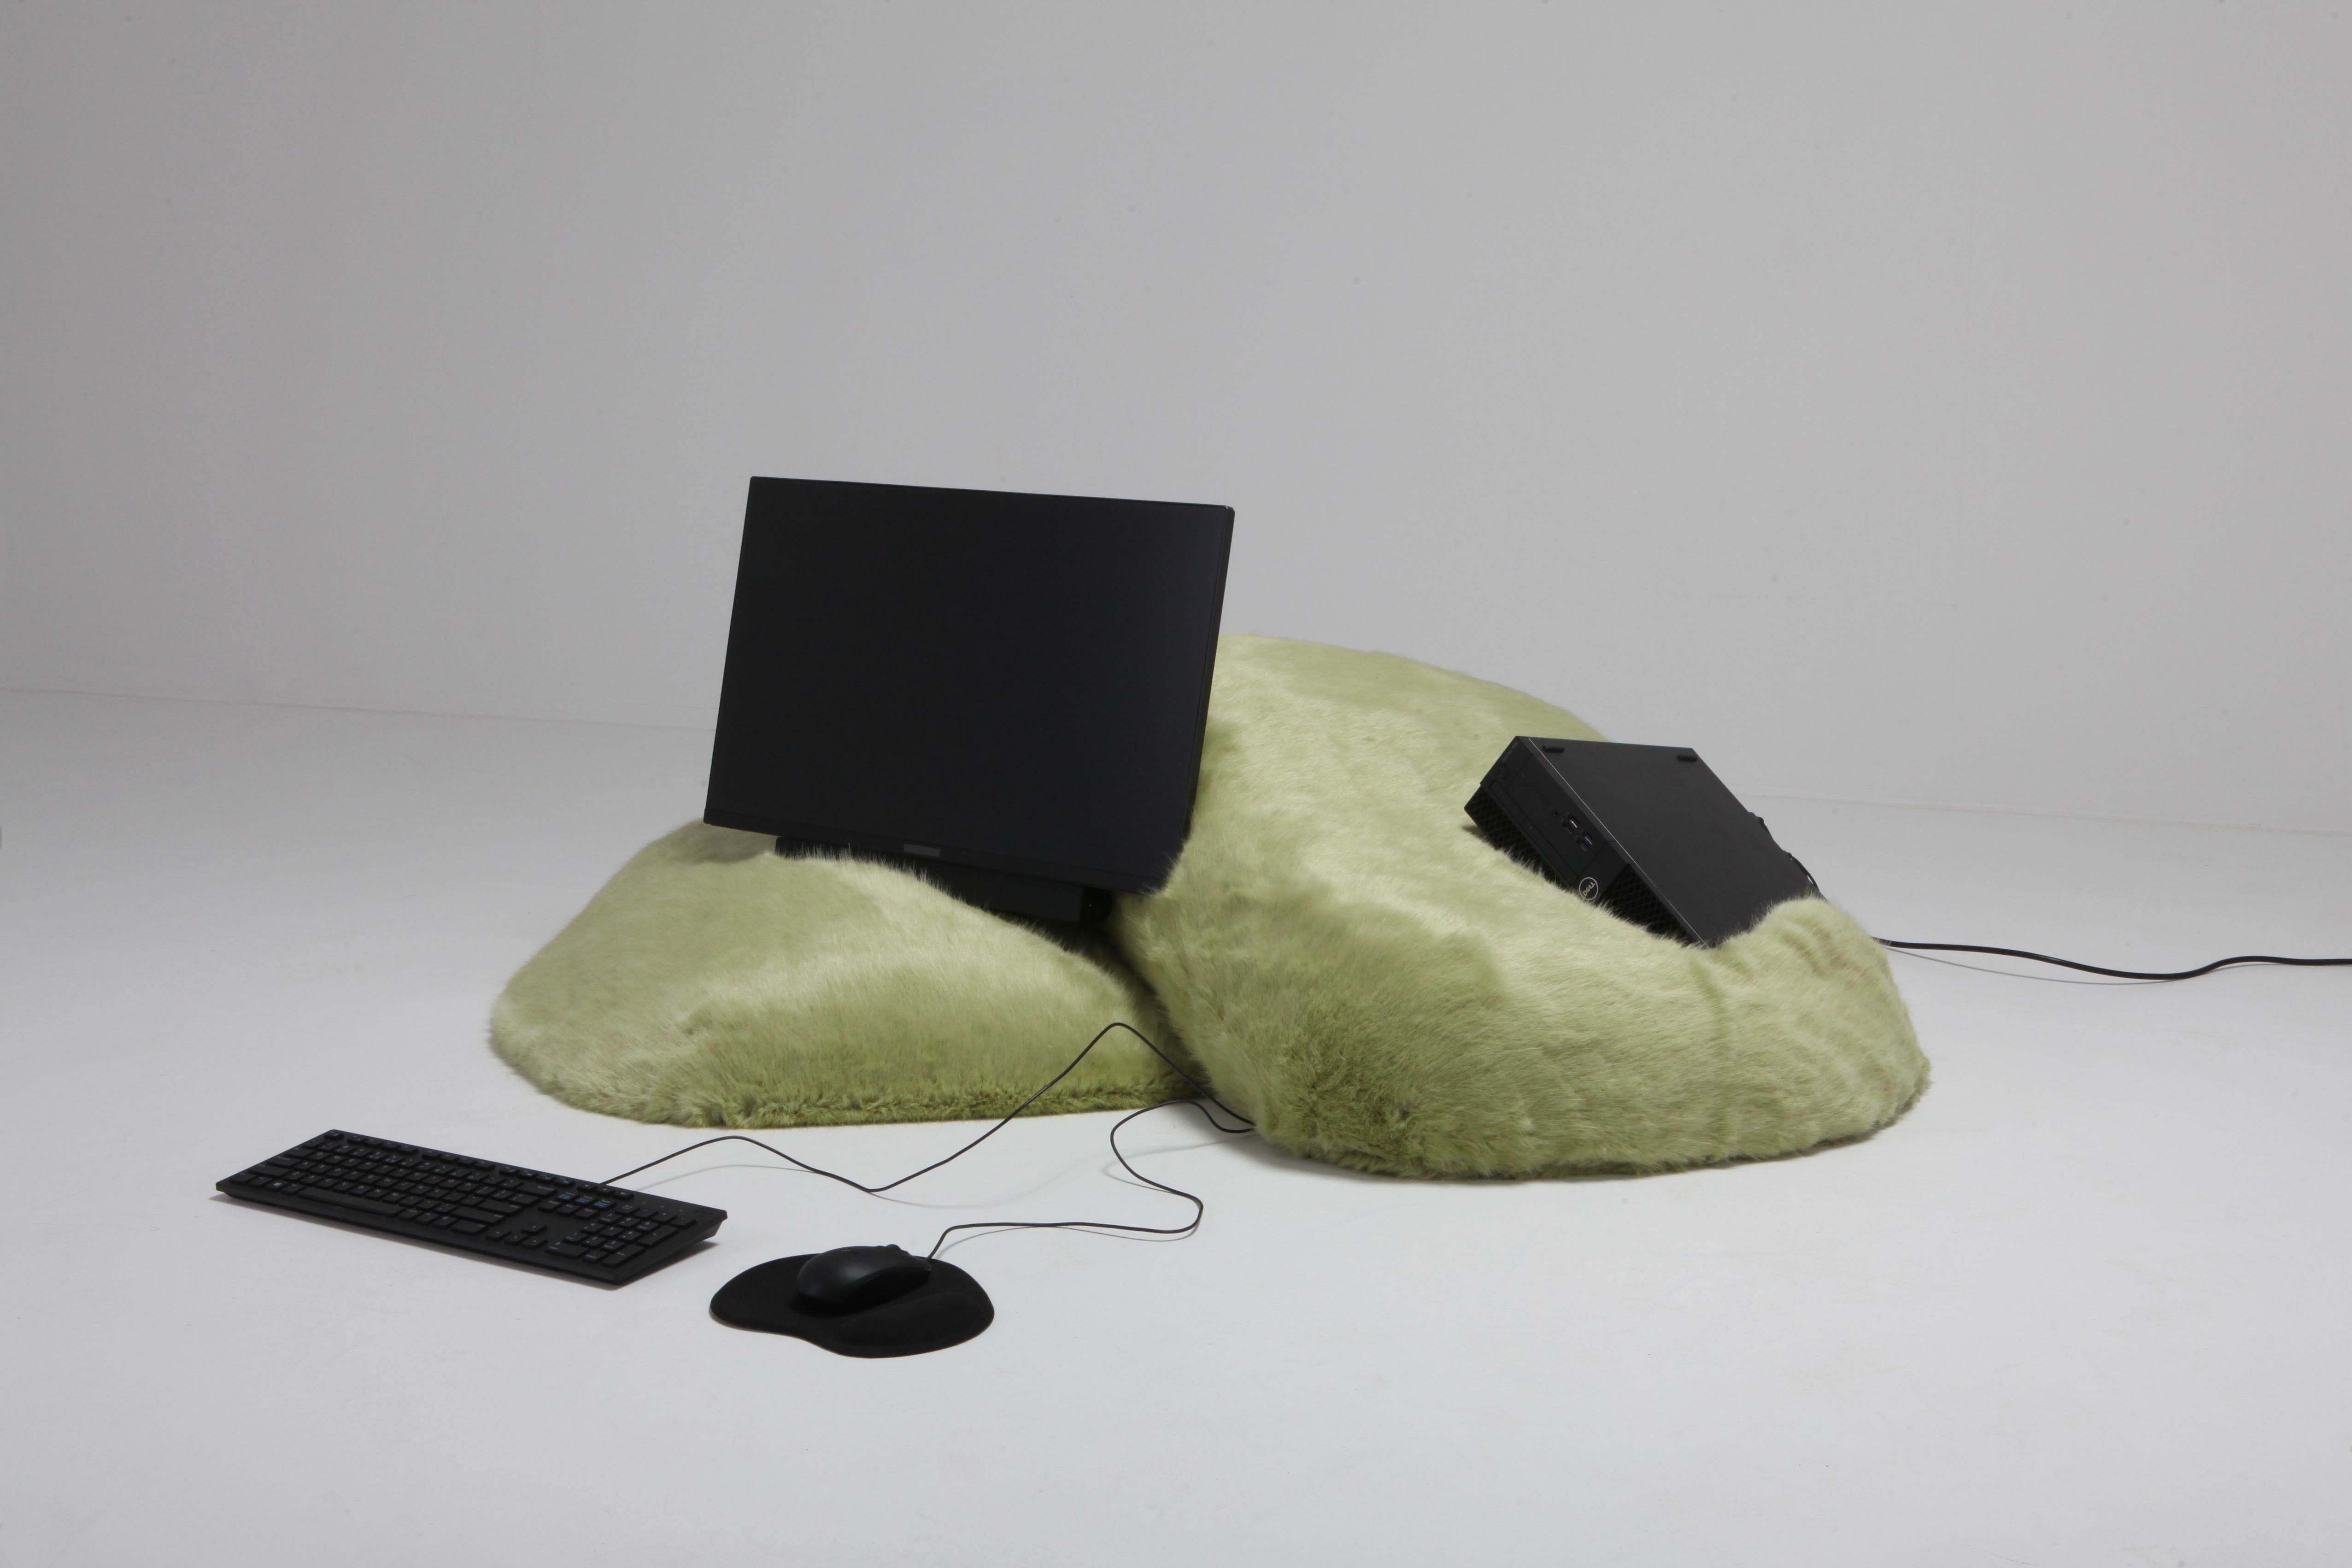 European 'Pillow Computer' by Schimmel & Schweikle